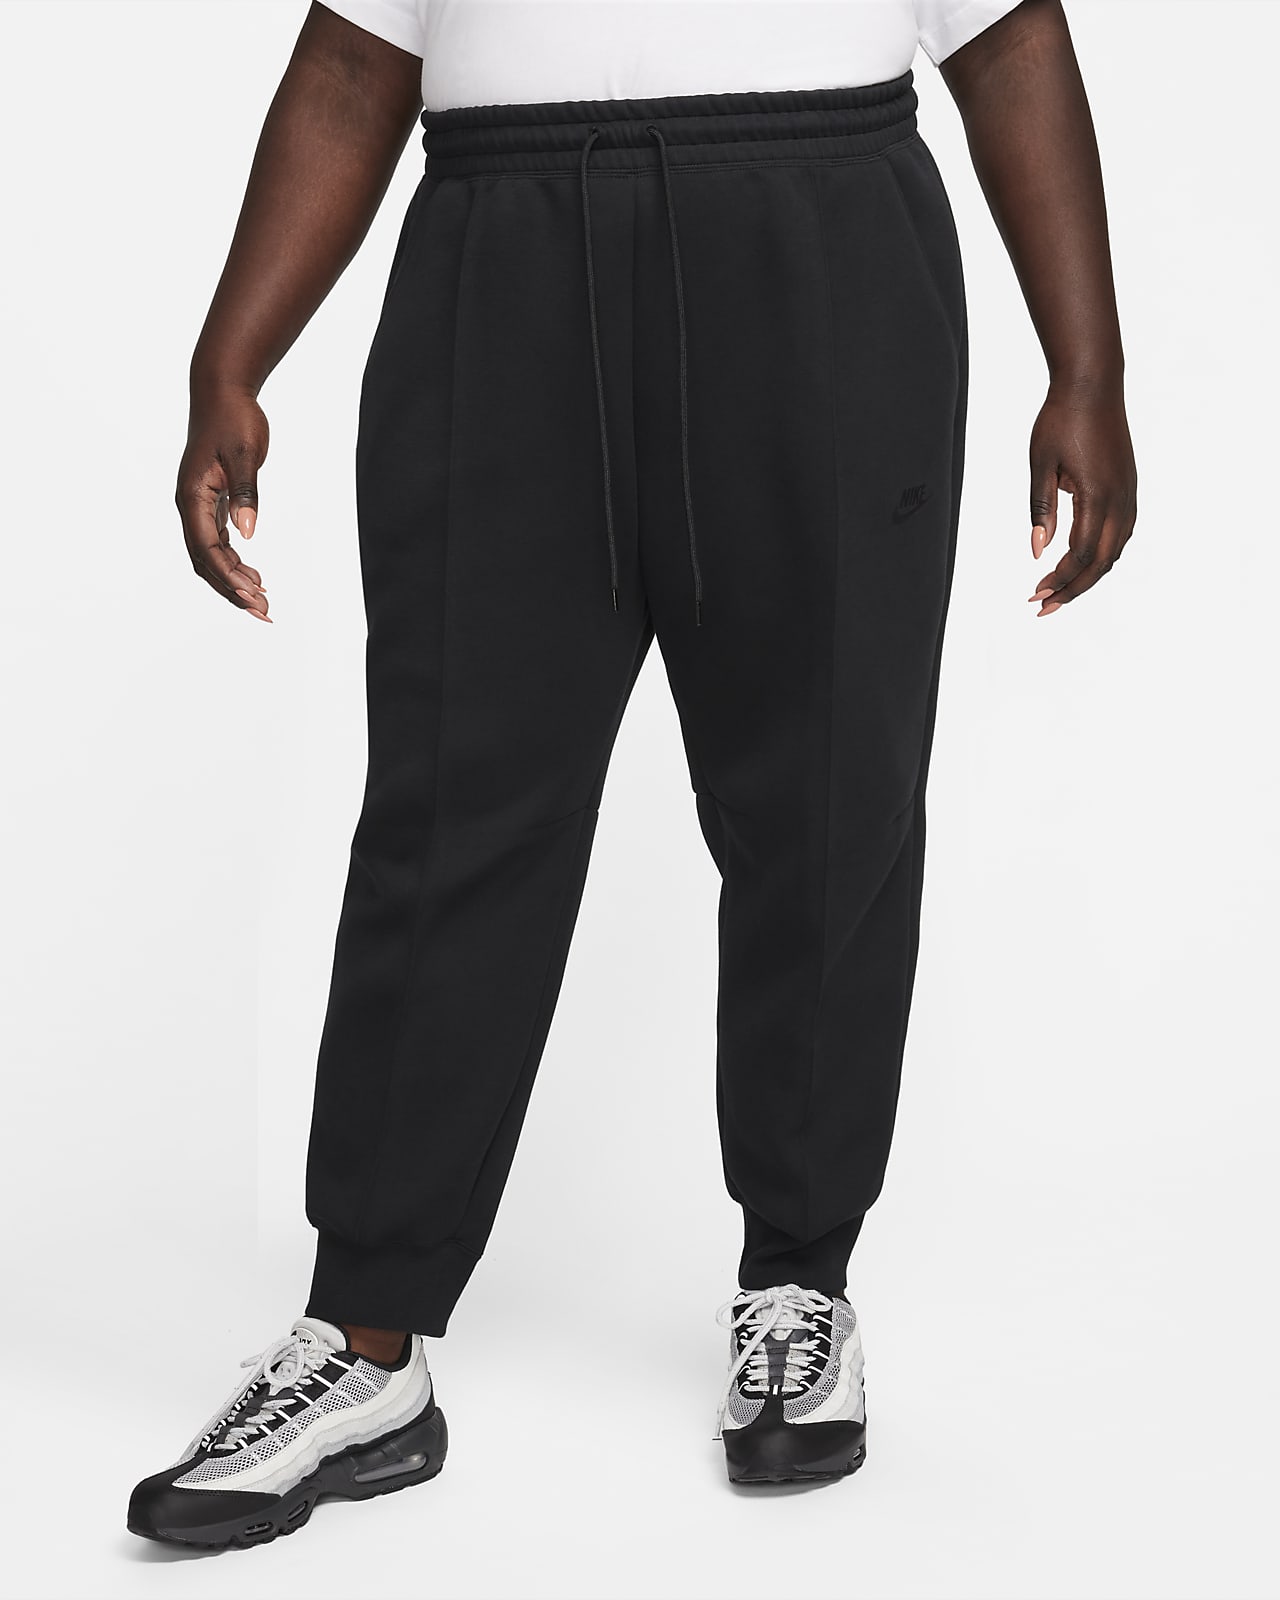 Mid-Rise Full Length Joggers & Sweatpants. Nike CA